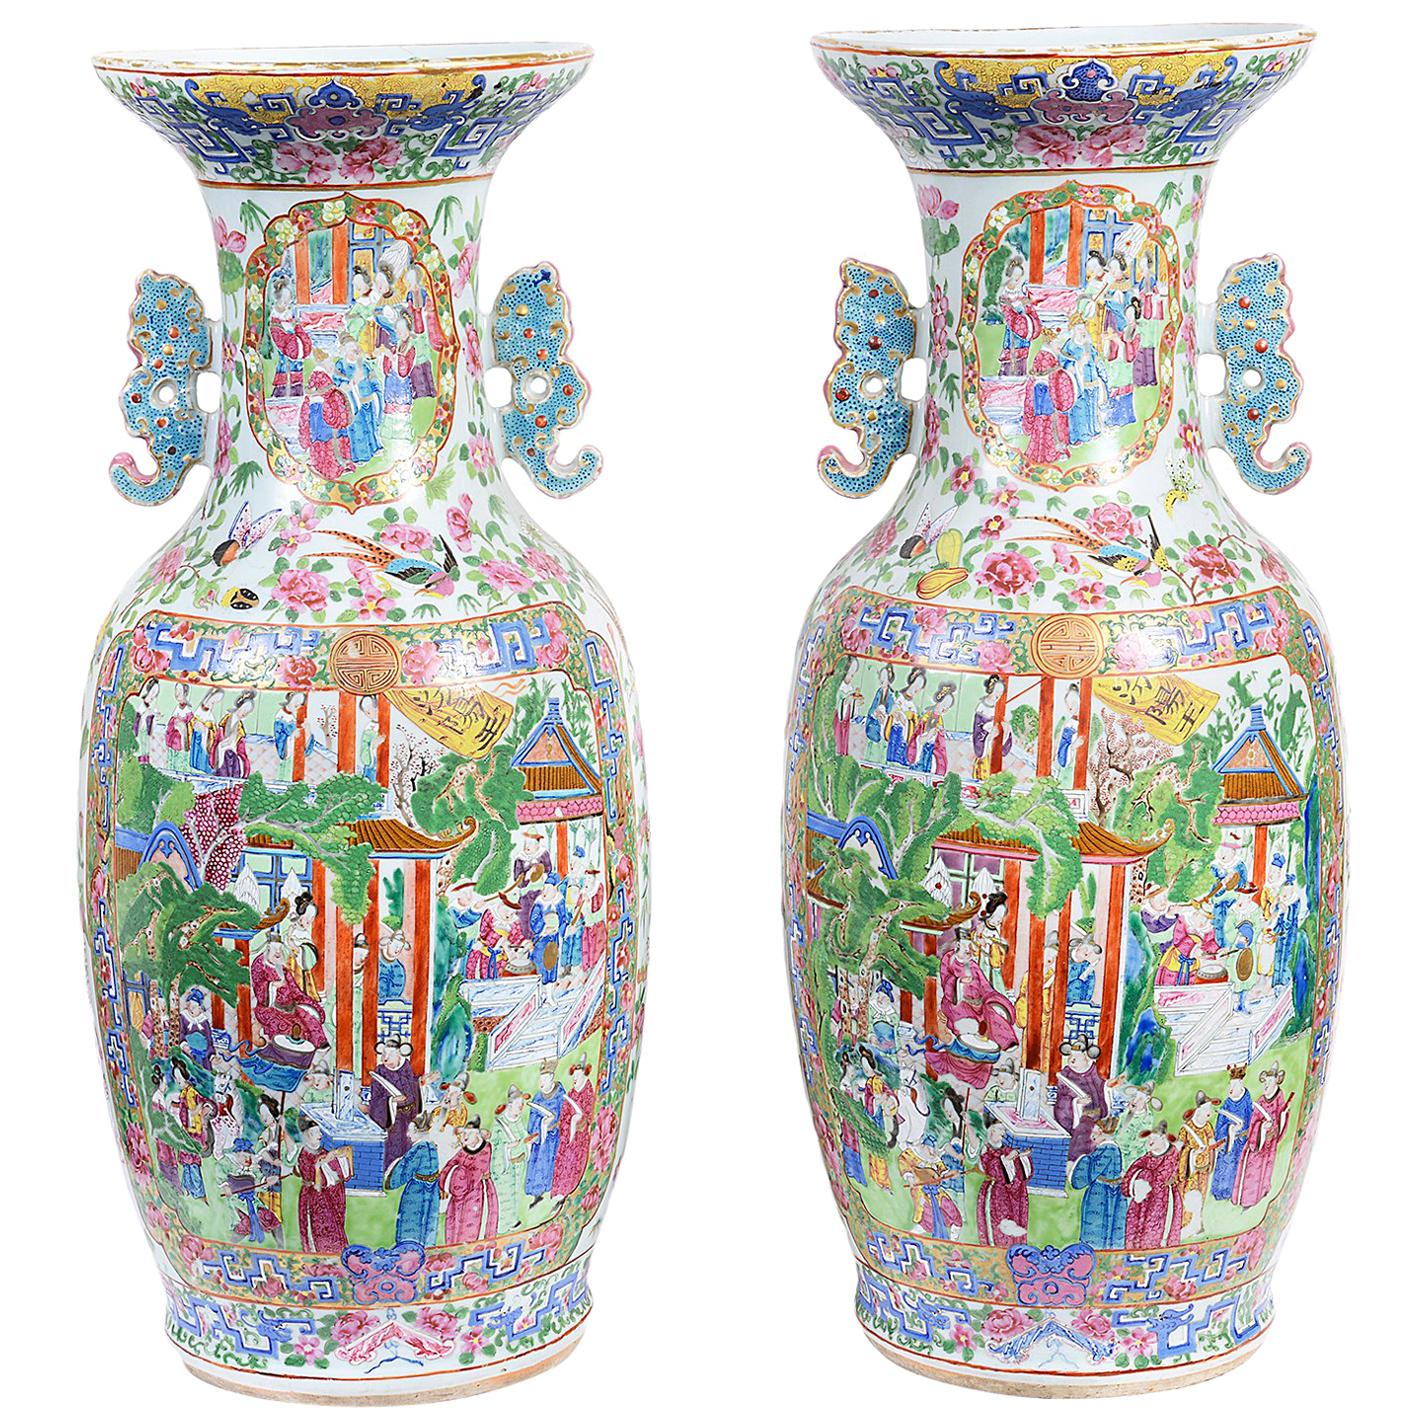 Großes Paar chinesische Cantonese-/Rosenmedaillon-Vasen, 19. Jahrhundert